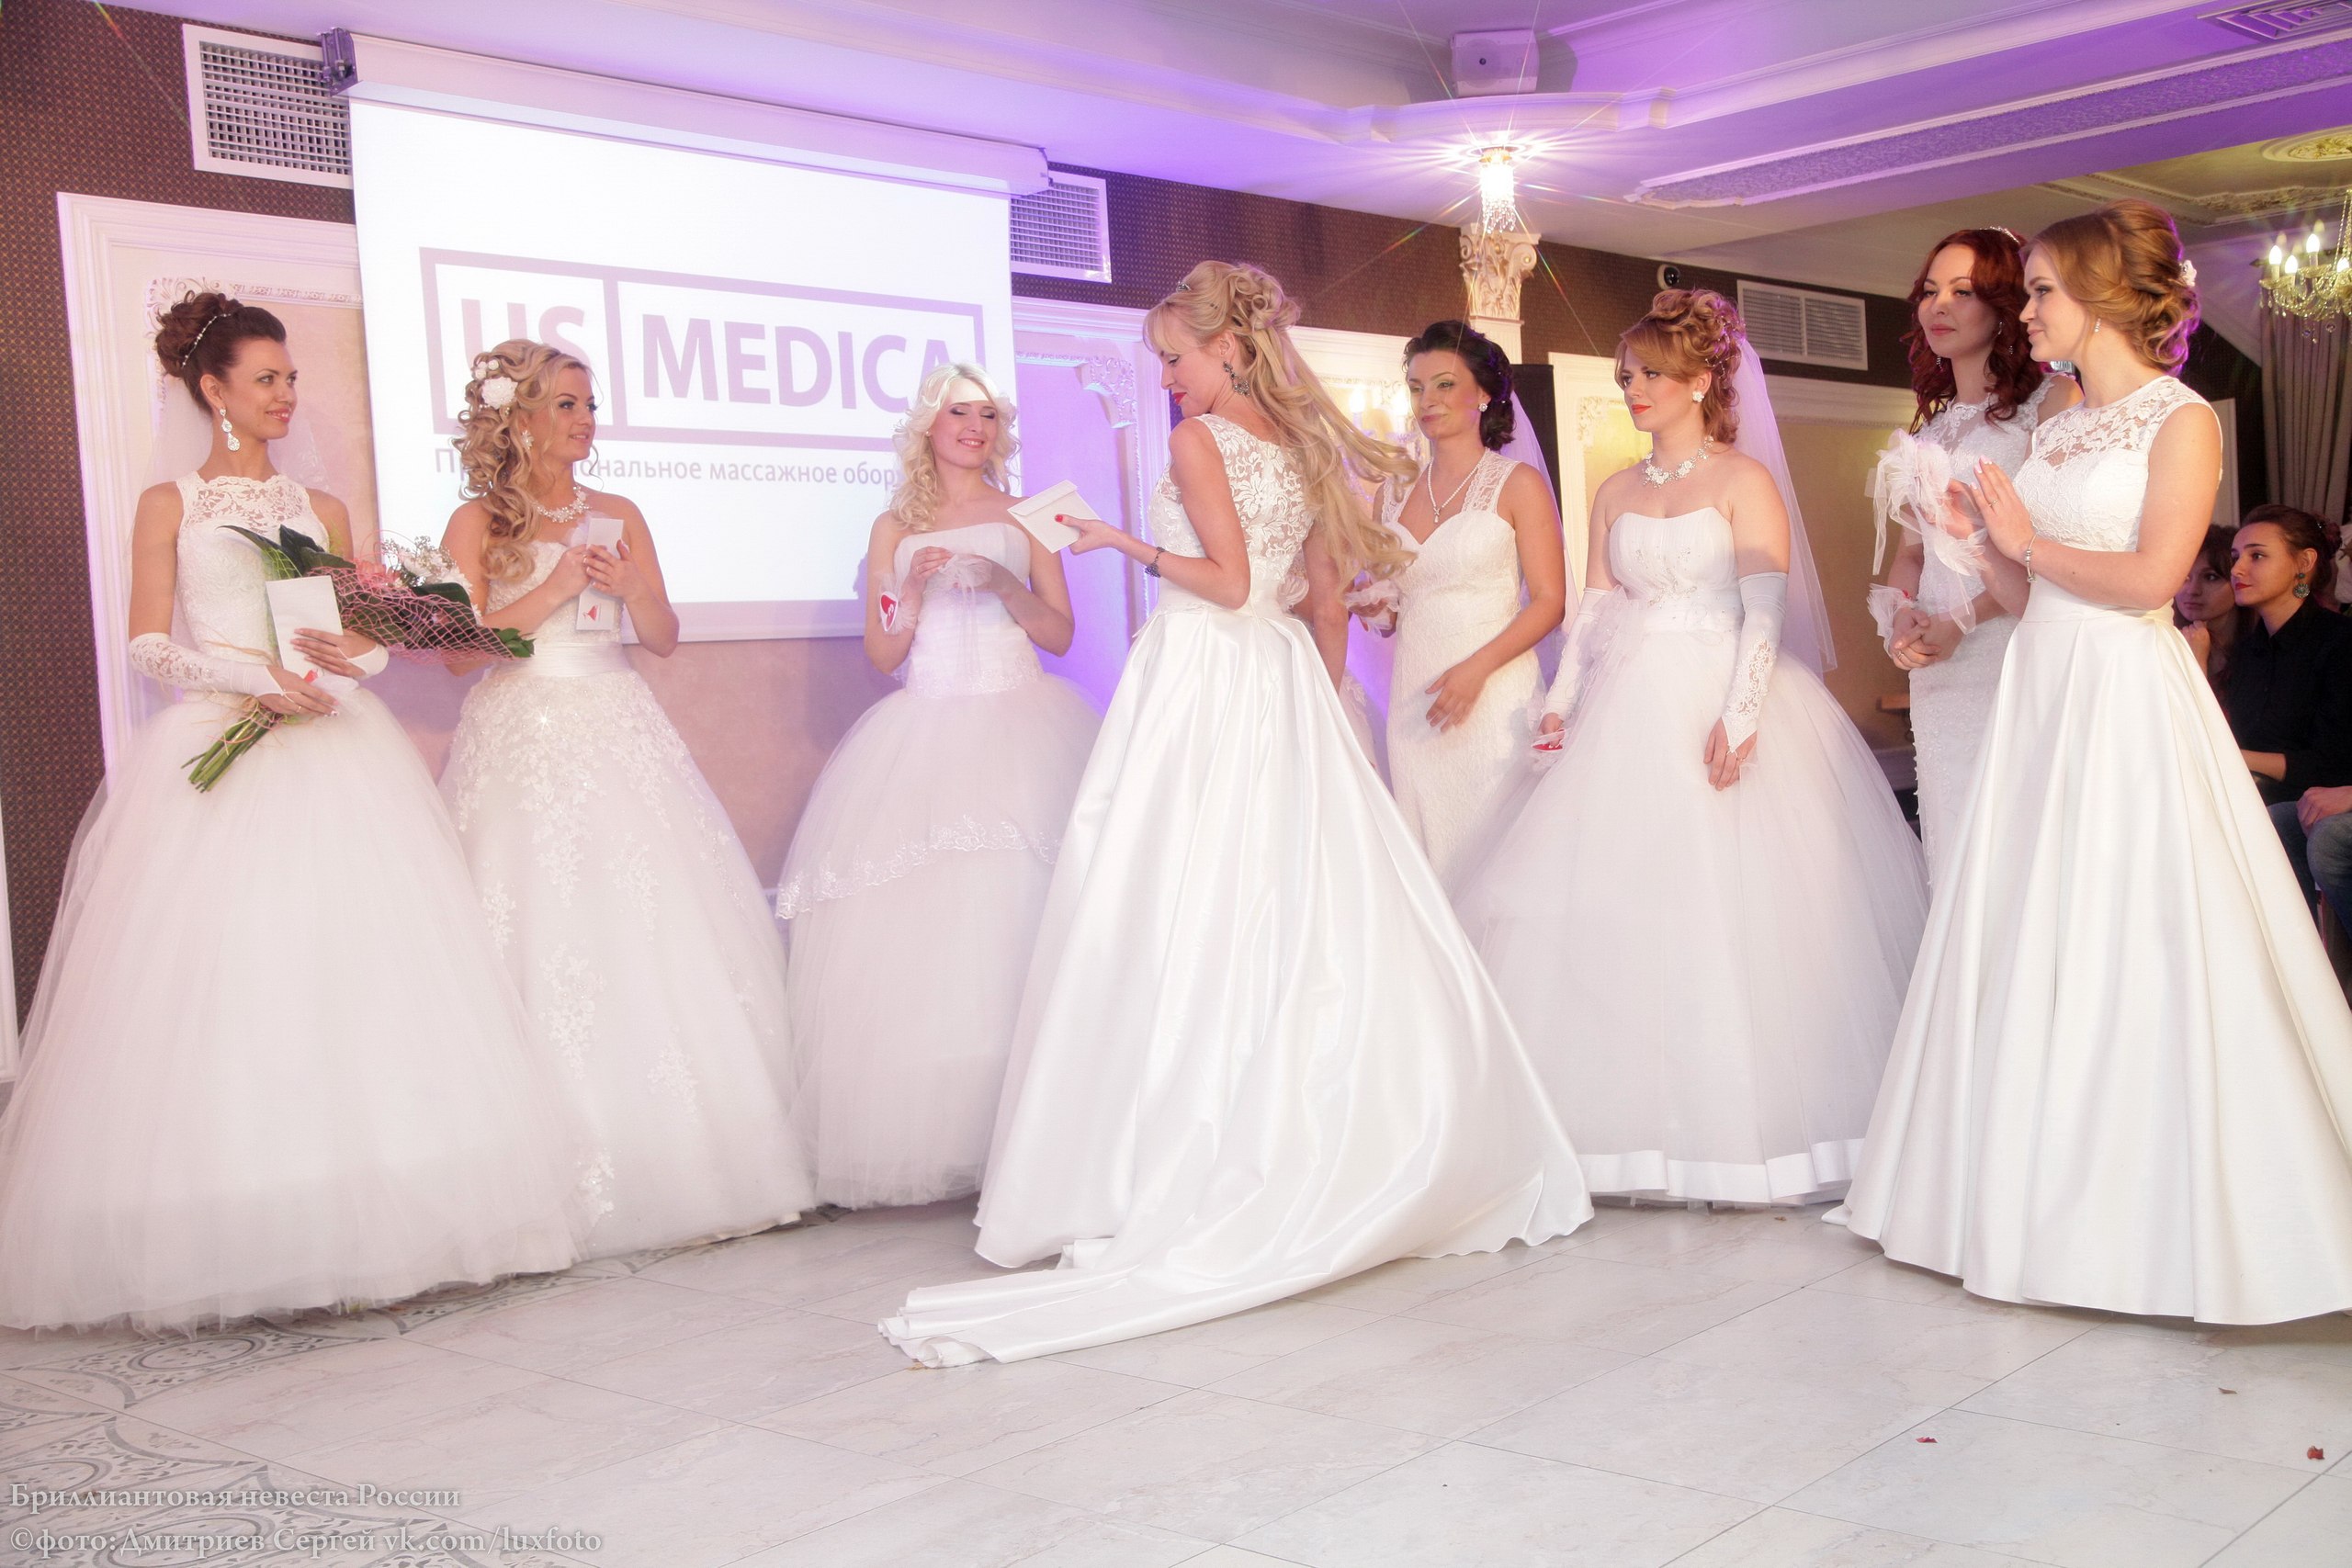 US-MEDICA - официальный партнер фестиваля Бриллиантовая невеста 2015